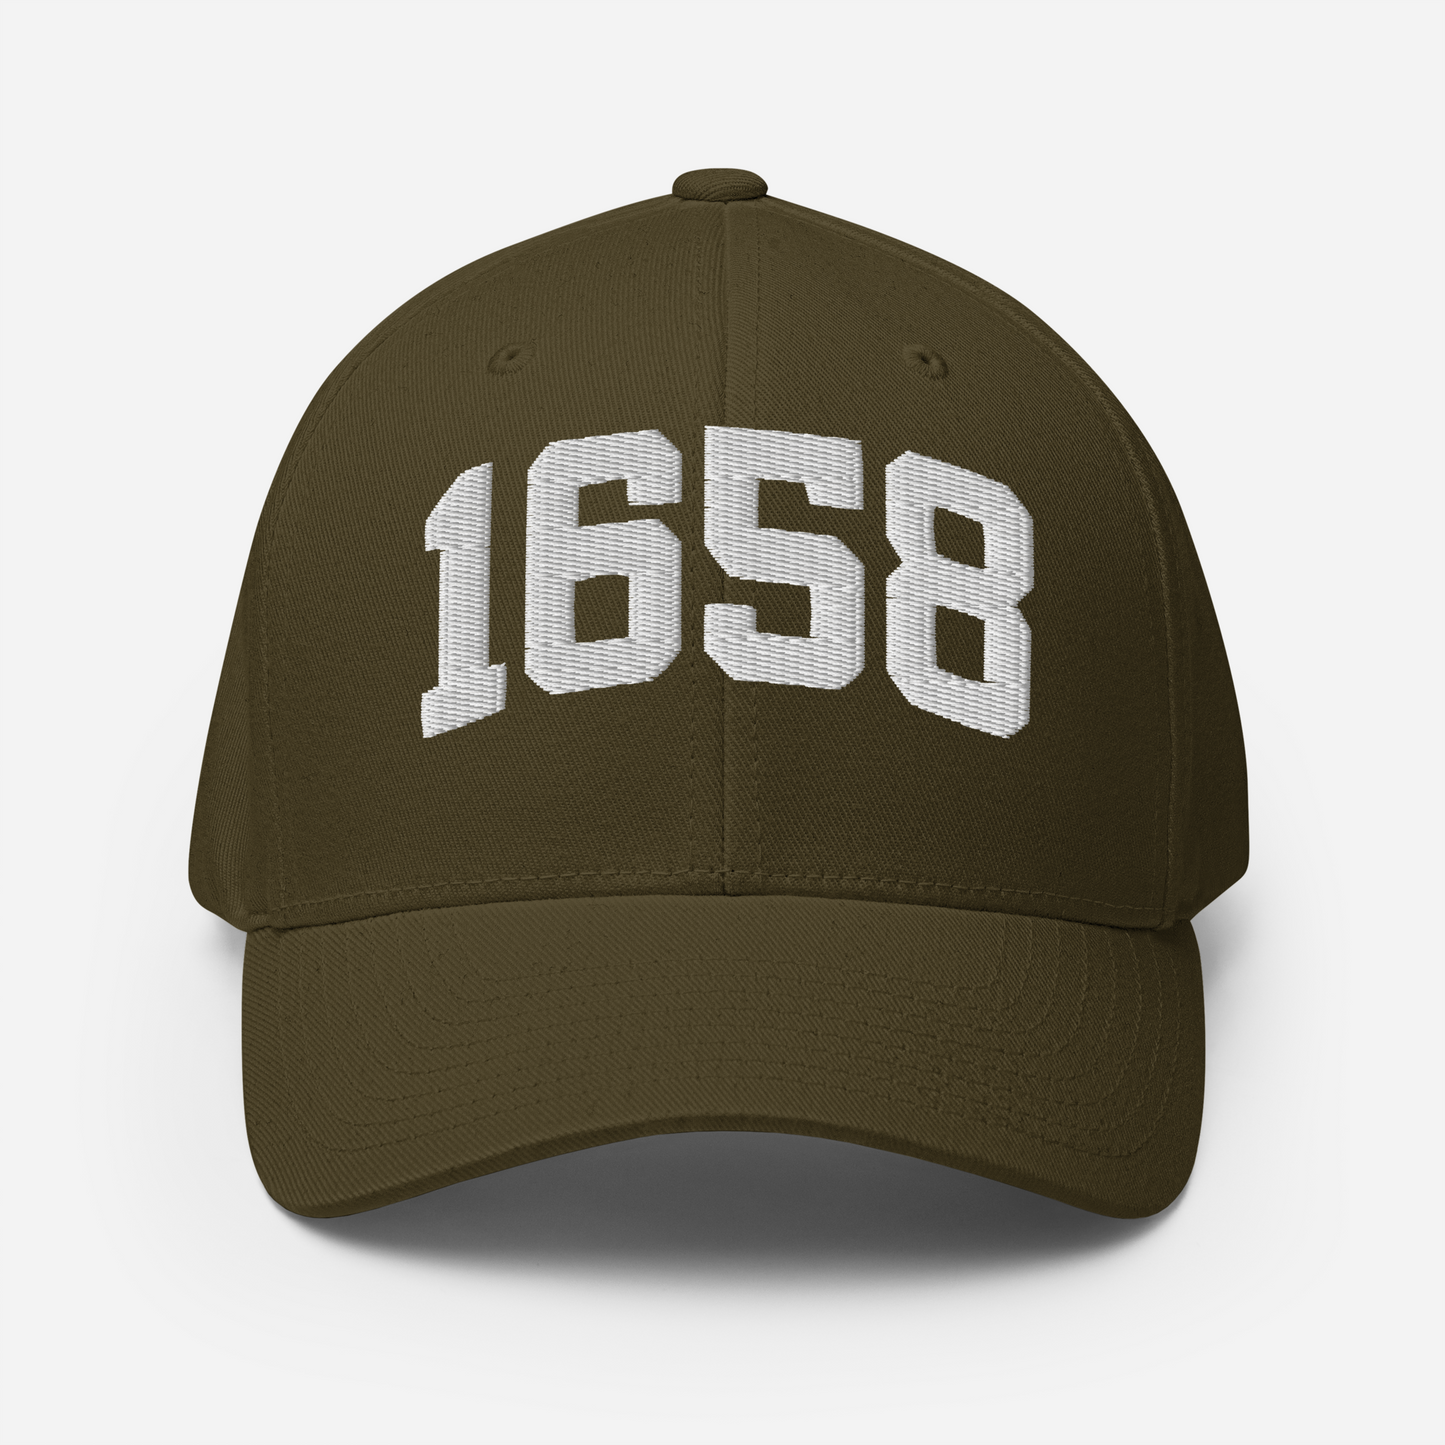 1658 Flexfit Hat